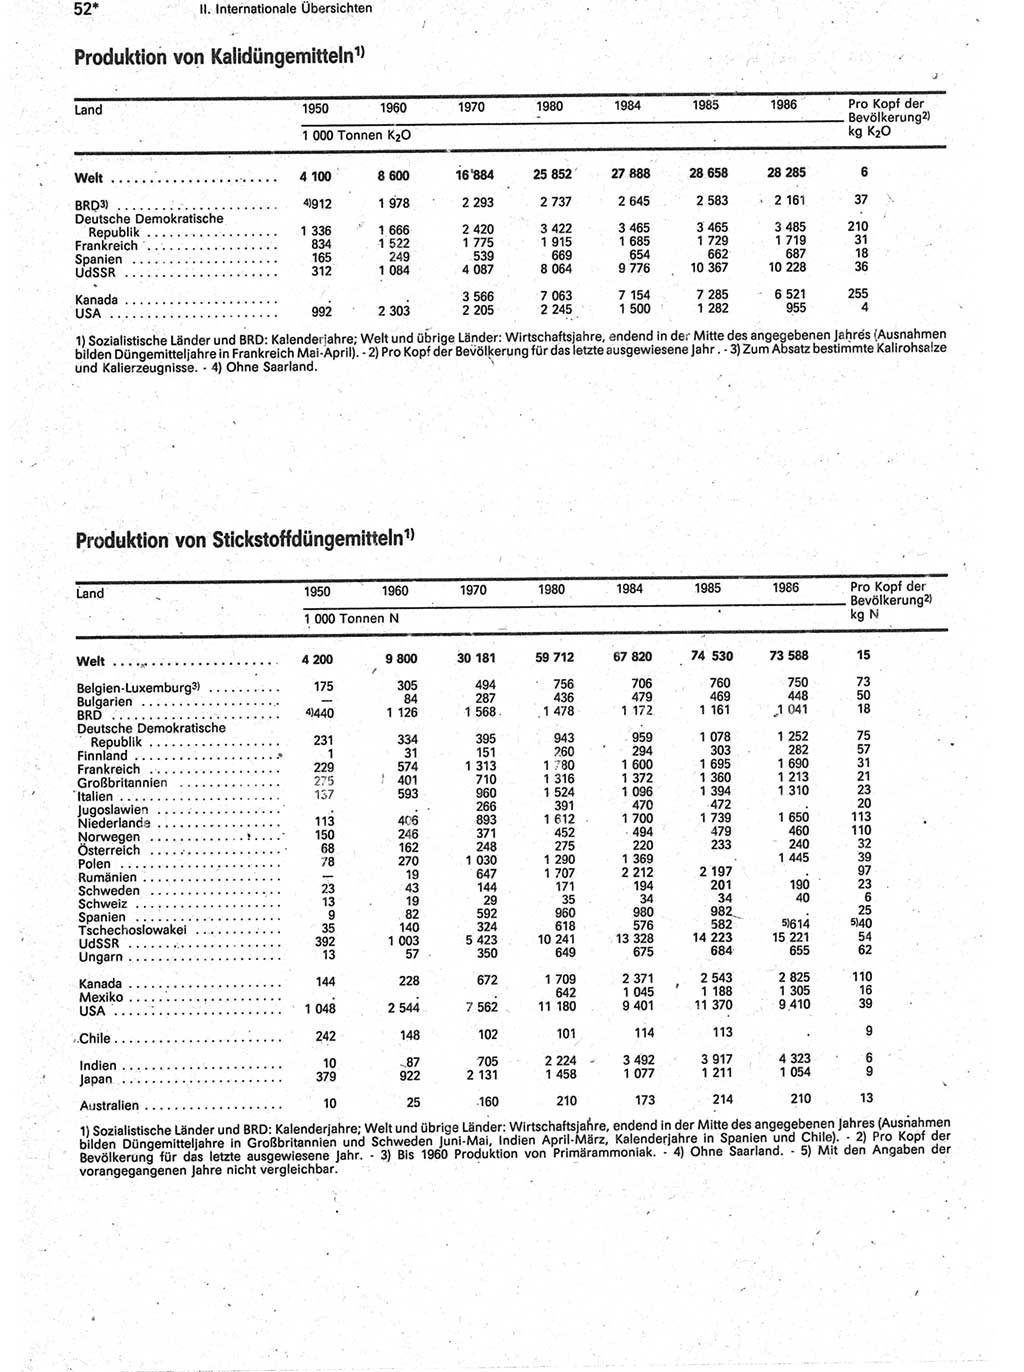 Statistisches Jahrbuch der Deutschen Demokratischen Republik (DDR) 1988, Seite 52 (Stat. Jb. DDR 1988, S. 52)